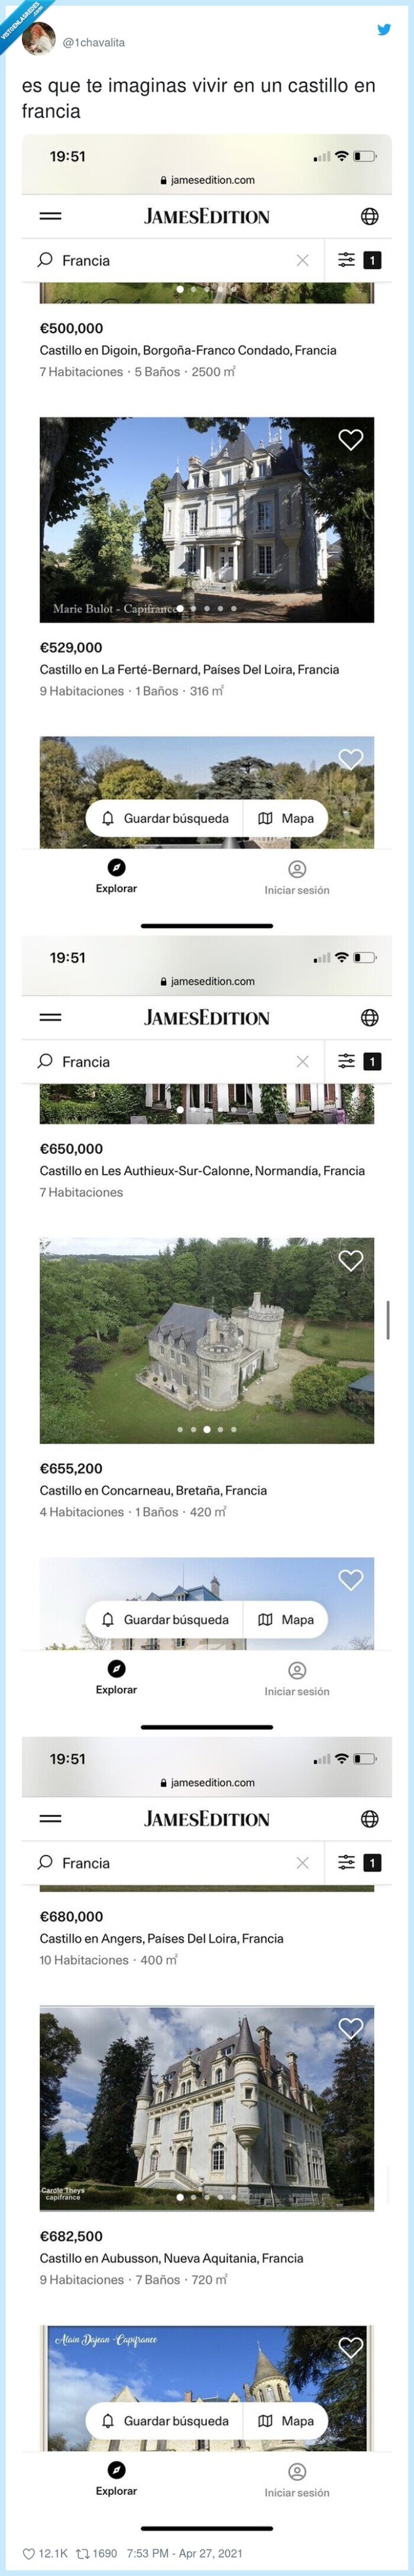 871007 - Cuatro castillos tremendos a la venta en Francia que son más baratos que un pisito en Madrid o Barcelona, por @1chavalita